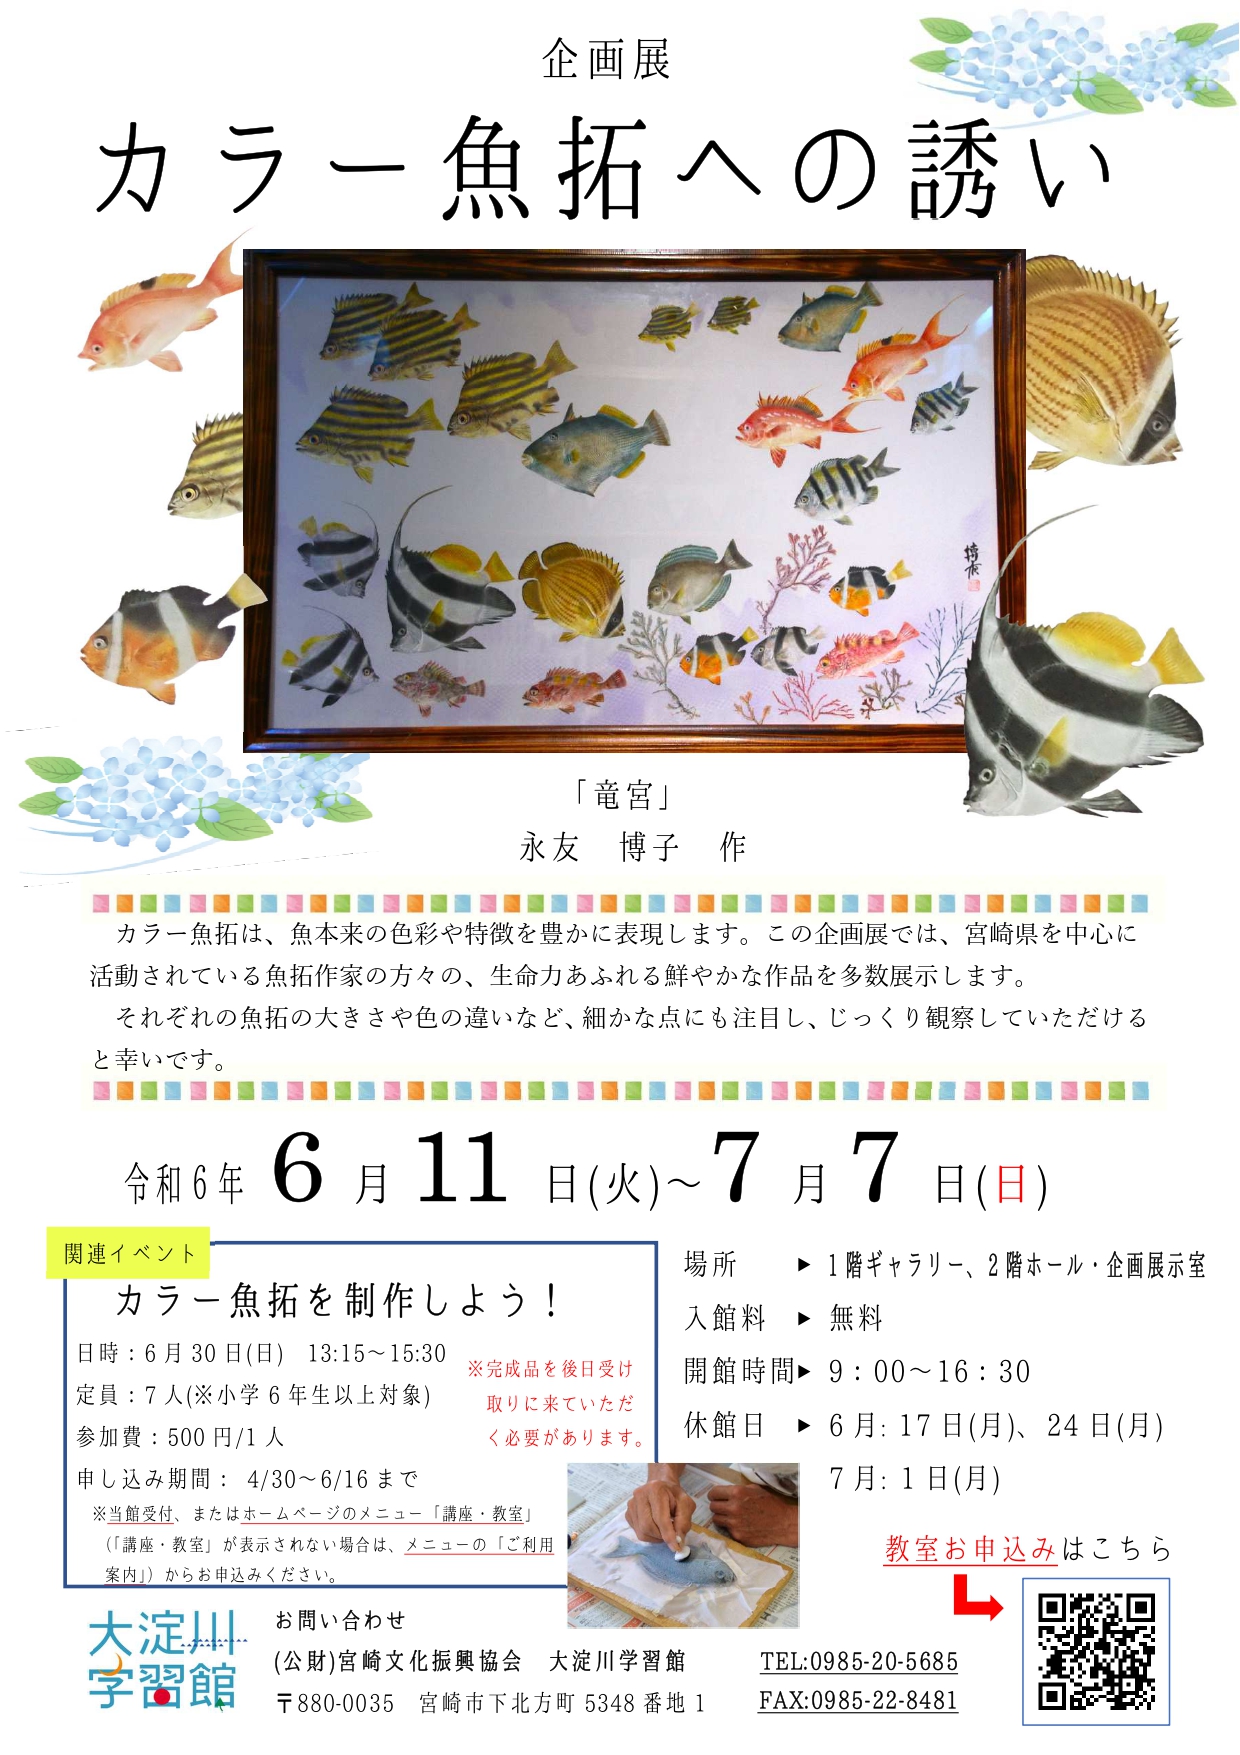 宮崎市イベント 大淀川学習館 カラー魚拓への誘い 画像4